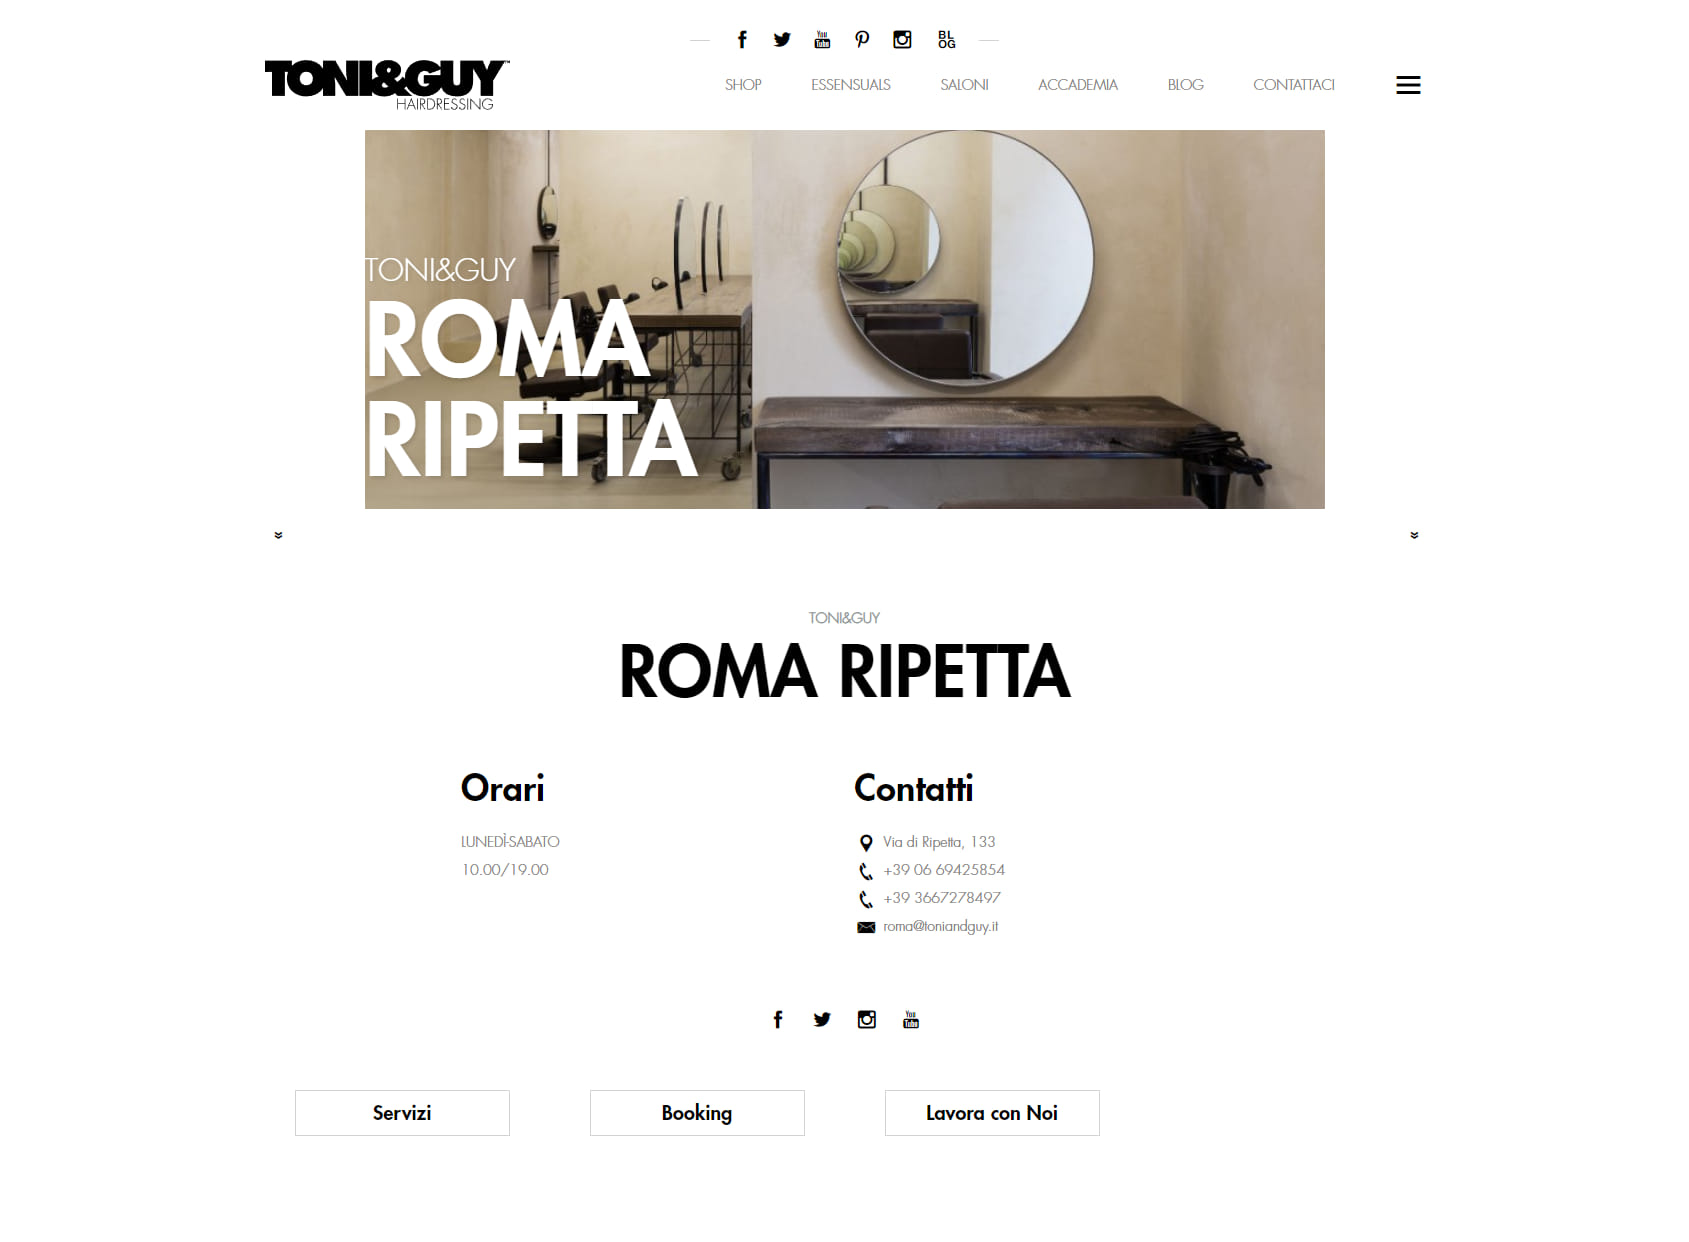 Toni&Guy Roma